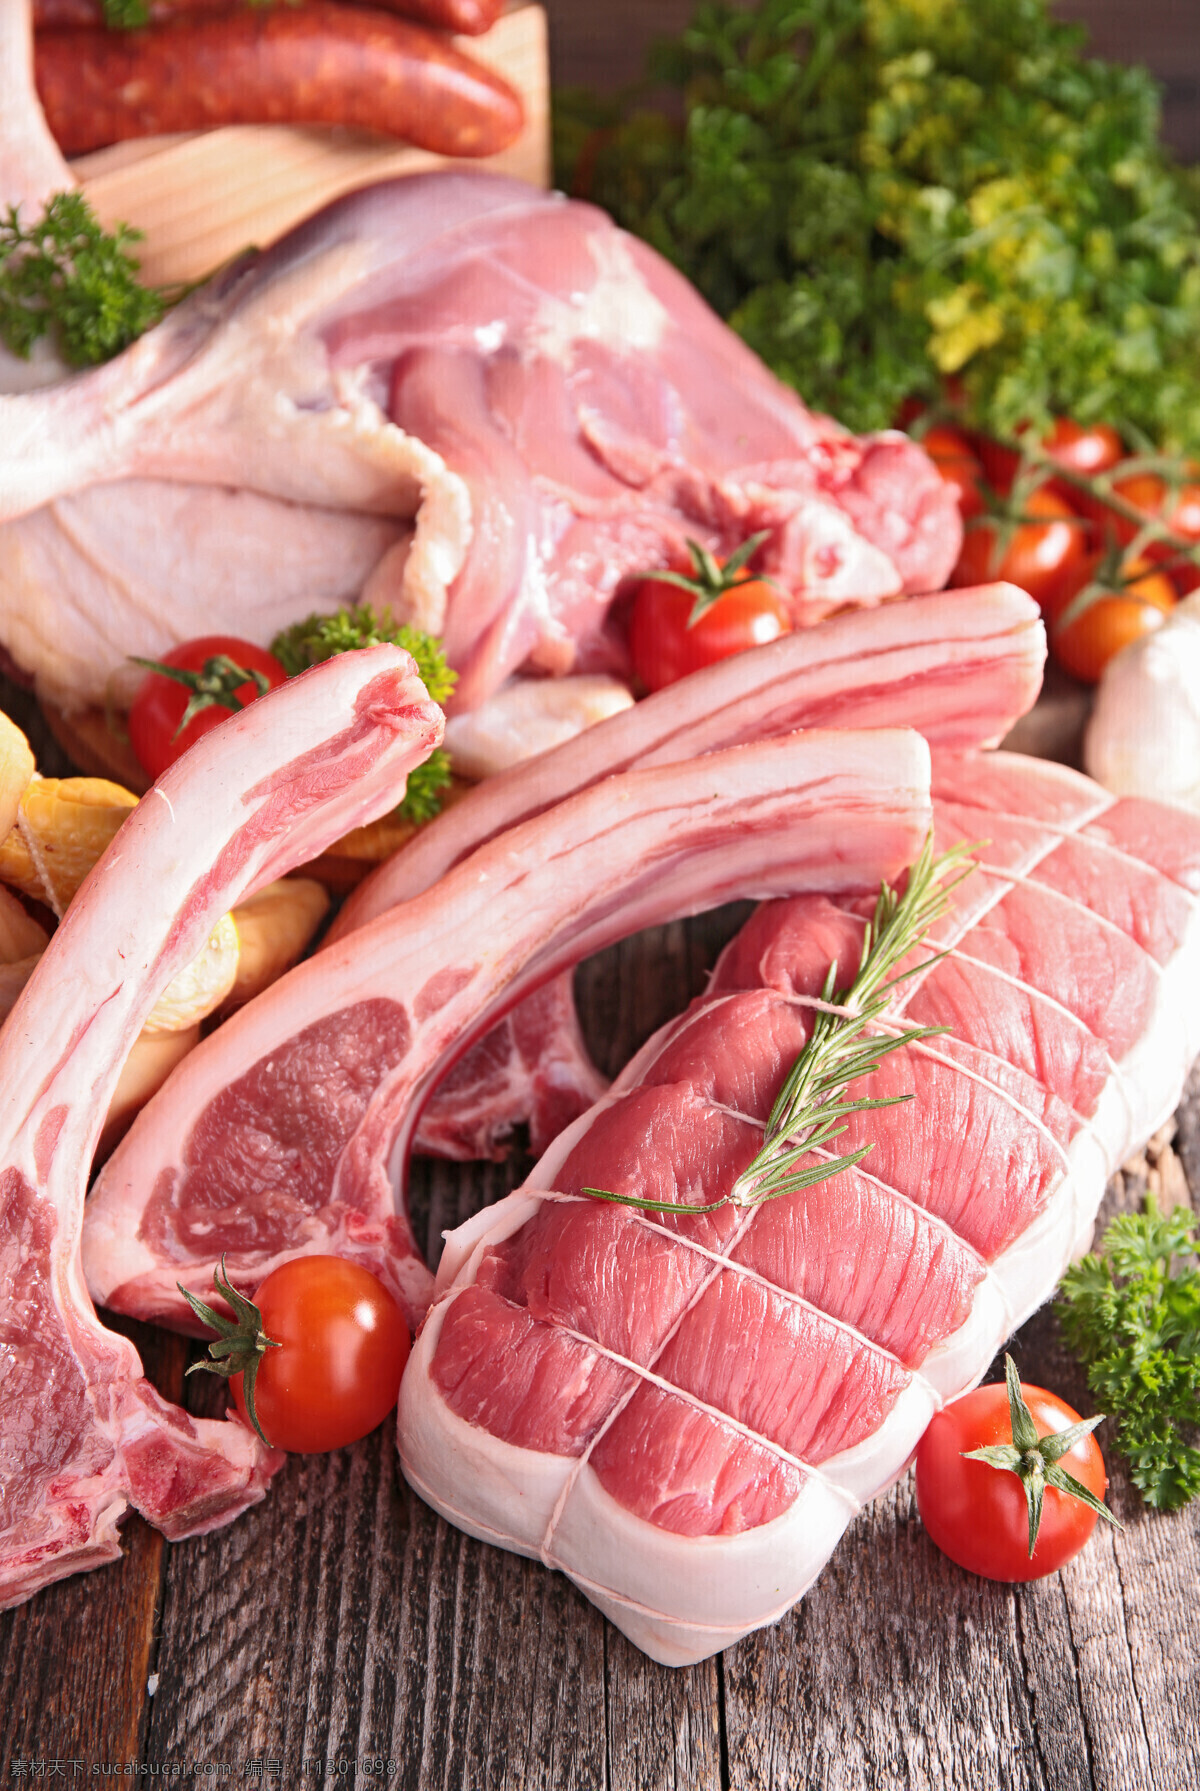 新鲜肉类 鲜肉 新鲜 排骨 牛肉 猪肉 肉类 羊肉 烤肉 肉食 肉 餐饮美食 食物原料